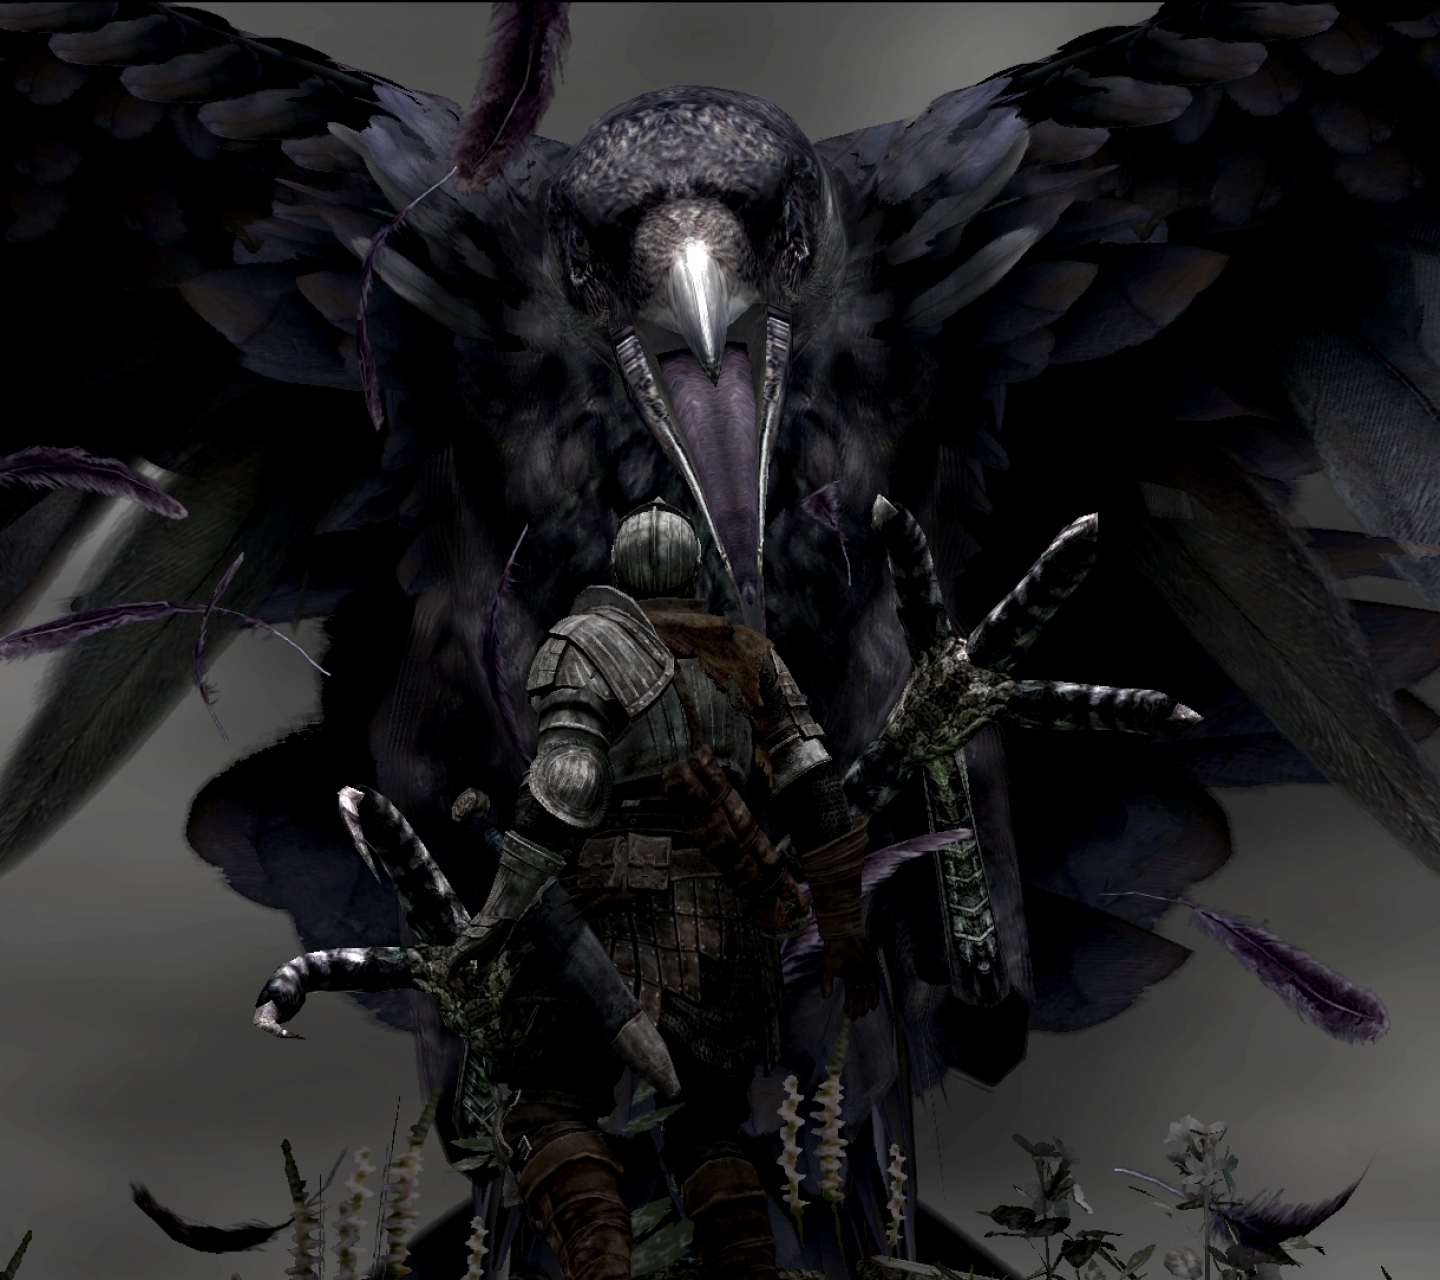 Téléchargez gratuitement l'image Dark Souls, Jeux Vidéo sur le bureau de votre PC